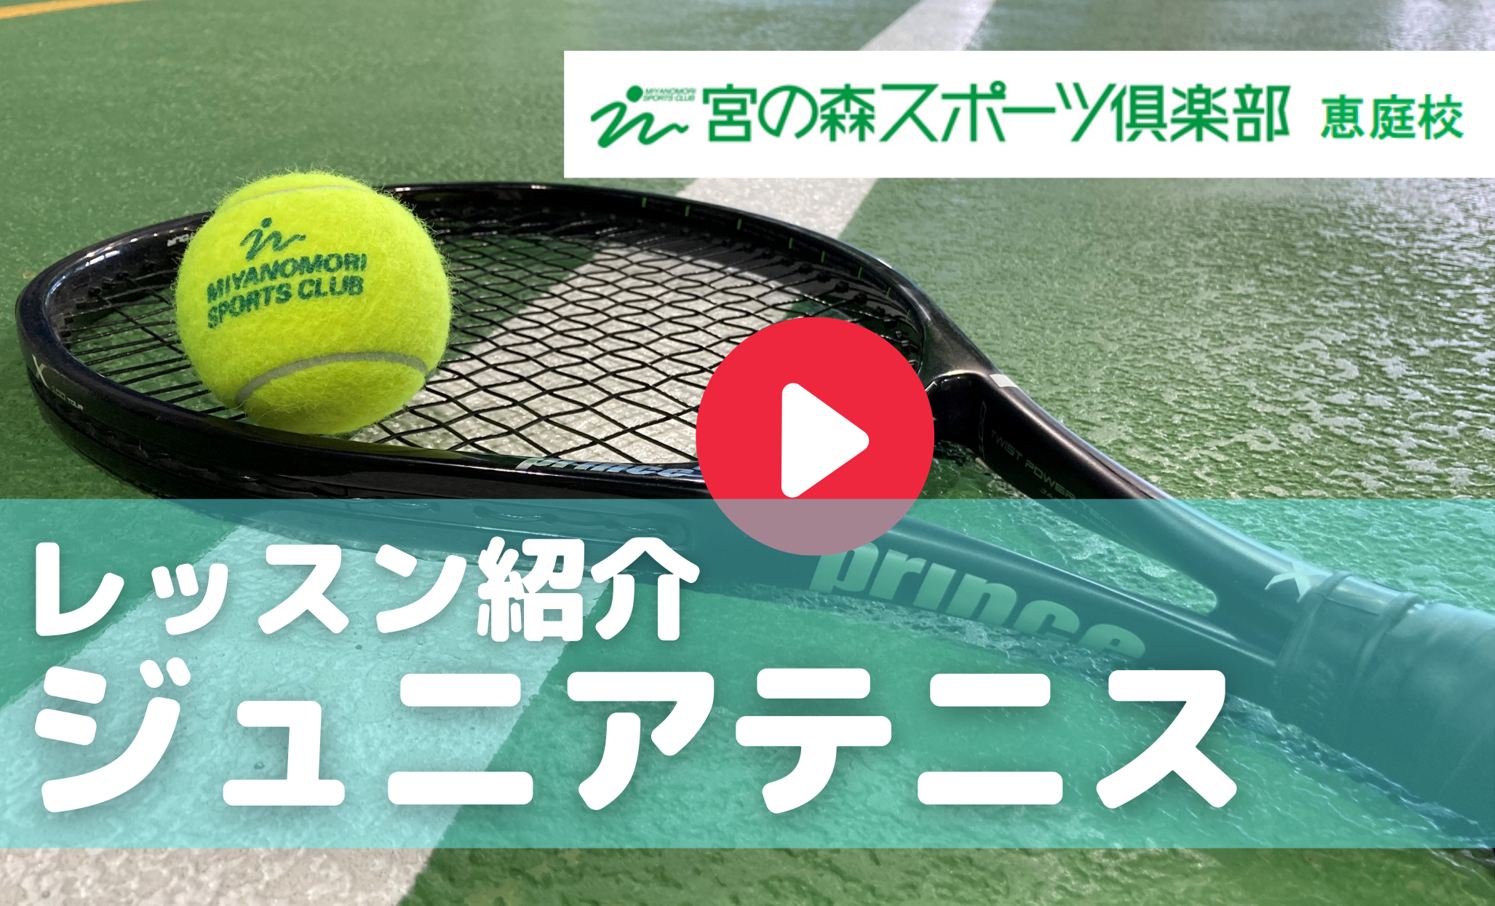 【動画】ジュニアテニス・レッスンのご紹介